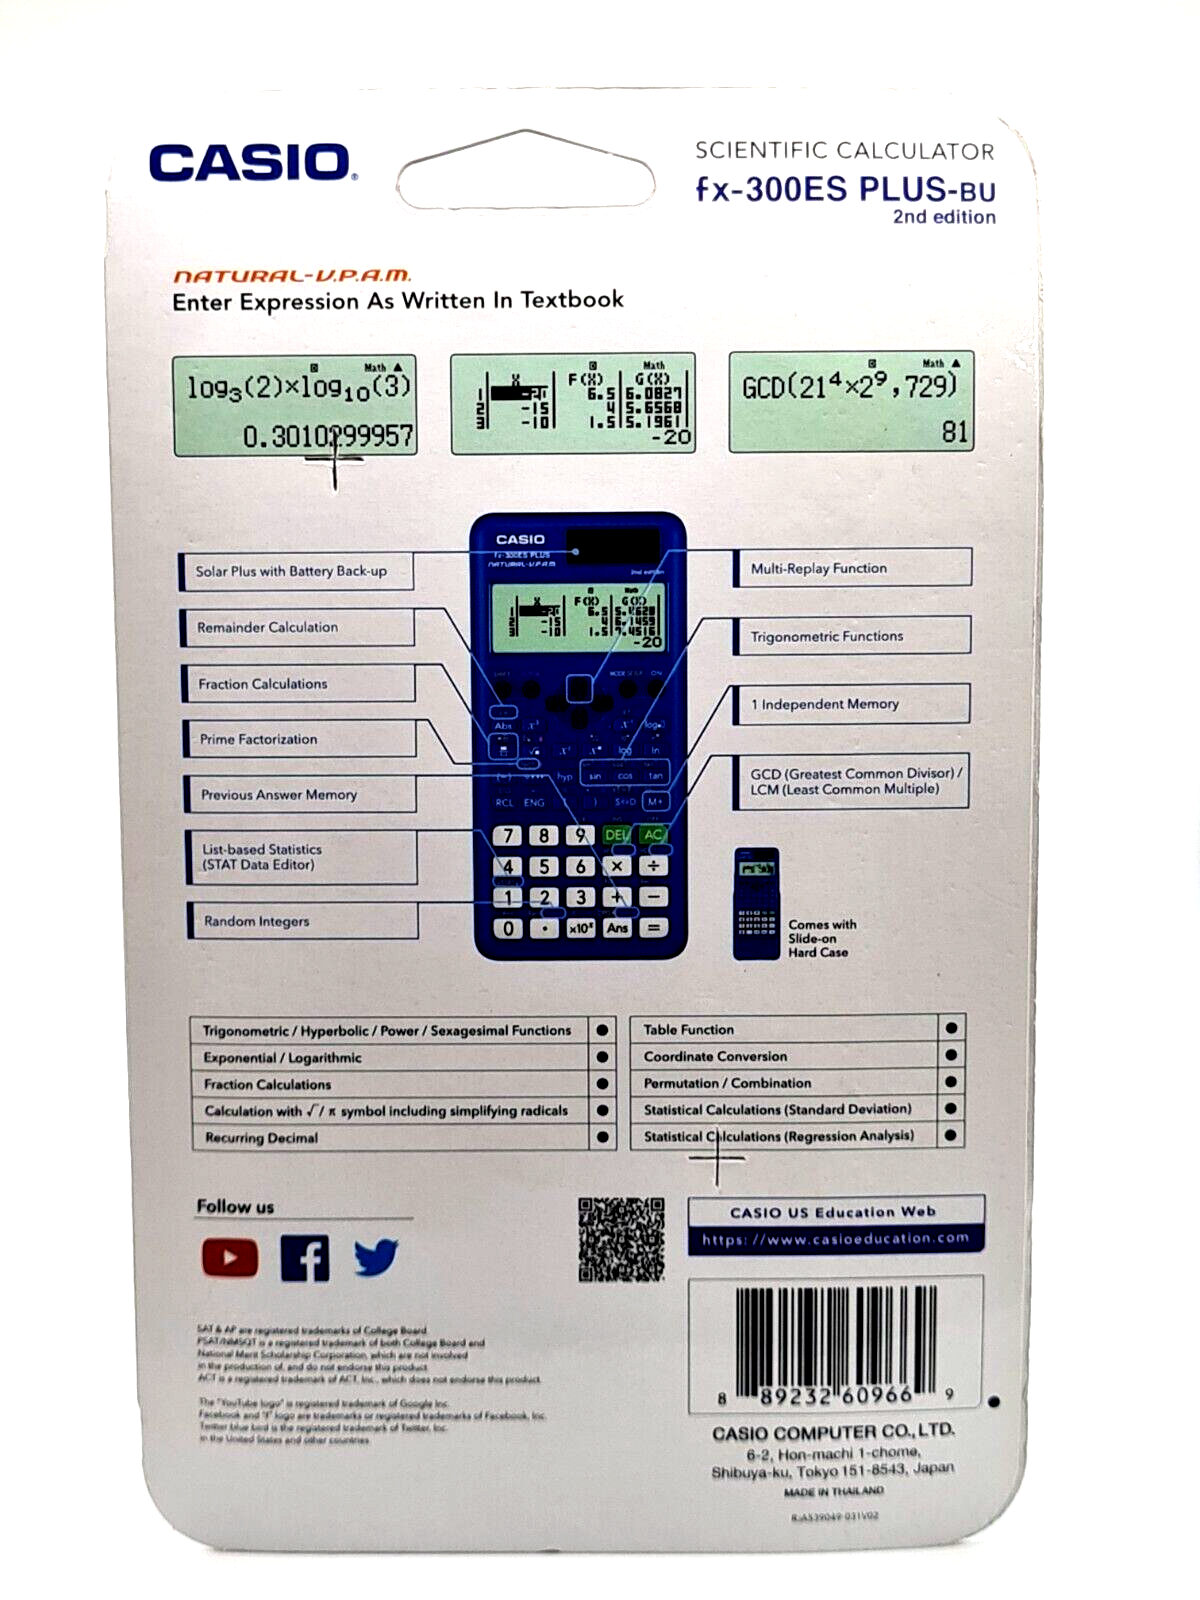 Casio fx-300ES PLUS 2nd Edition Scientific Calculator - Blue Casio Fx300es Plus bu - фотография #2